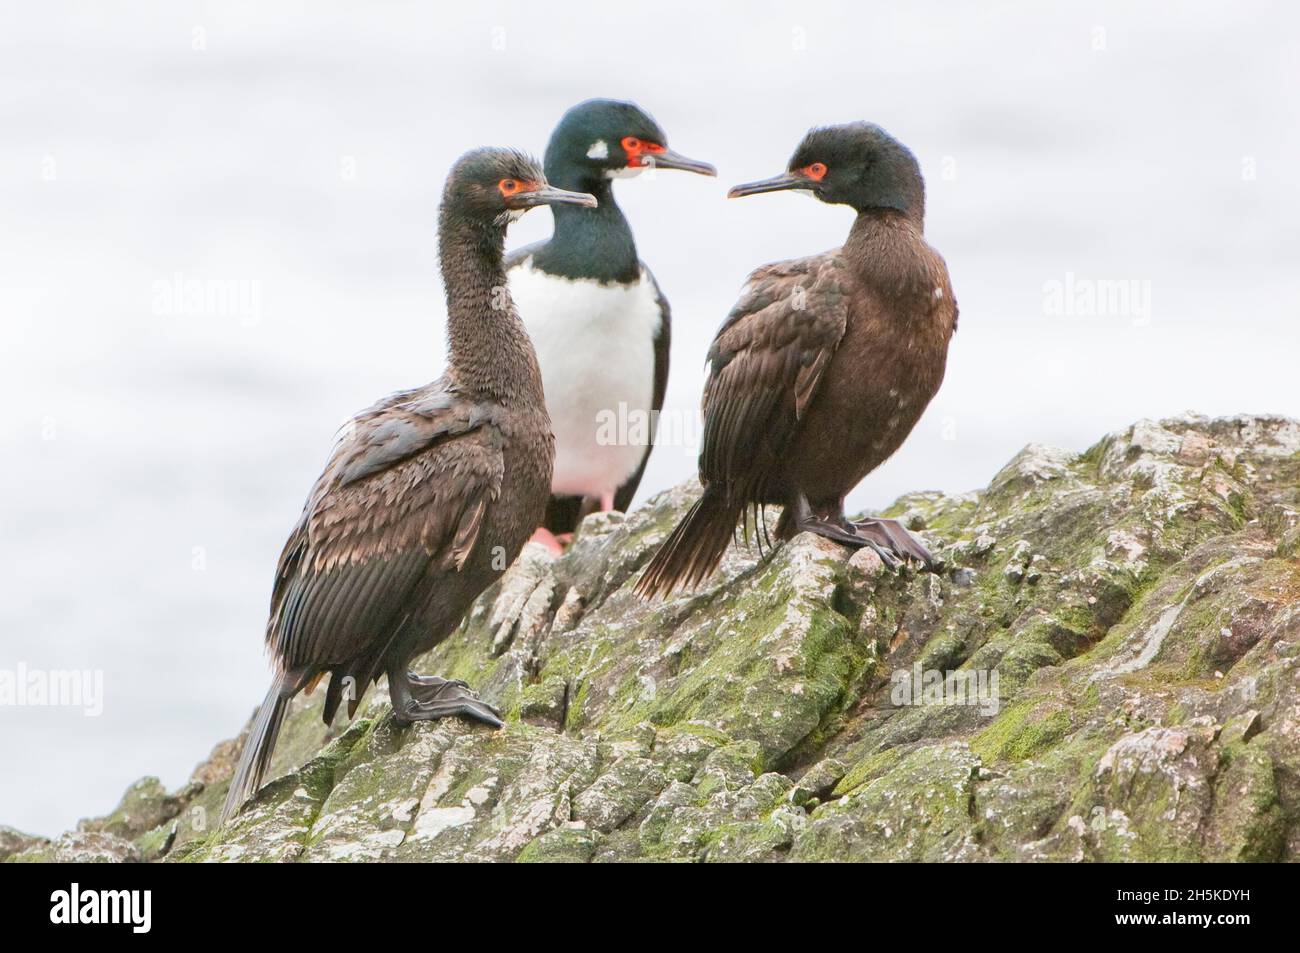 Trois scories antarctiques, des scories à yeux bleus (Phalacrocorax arriceps) et des scories rocheuses (Phalacrocorax magellanicus) se tenant ensemble sur des roches côtières Banque D'Images